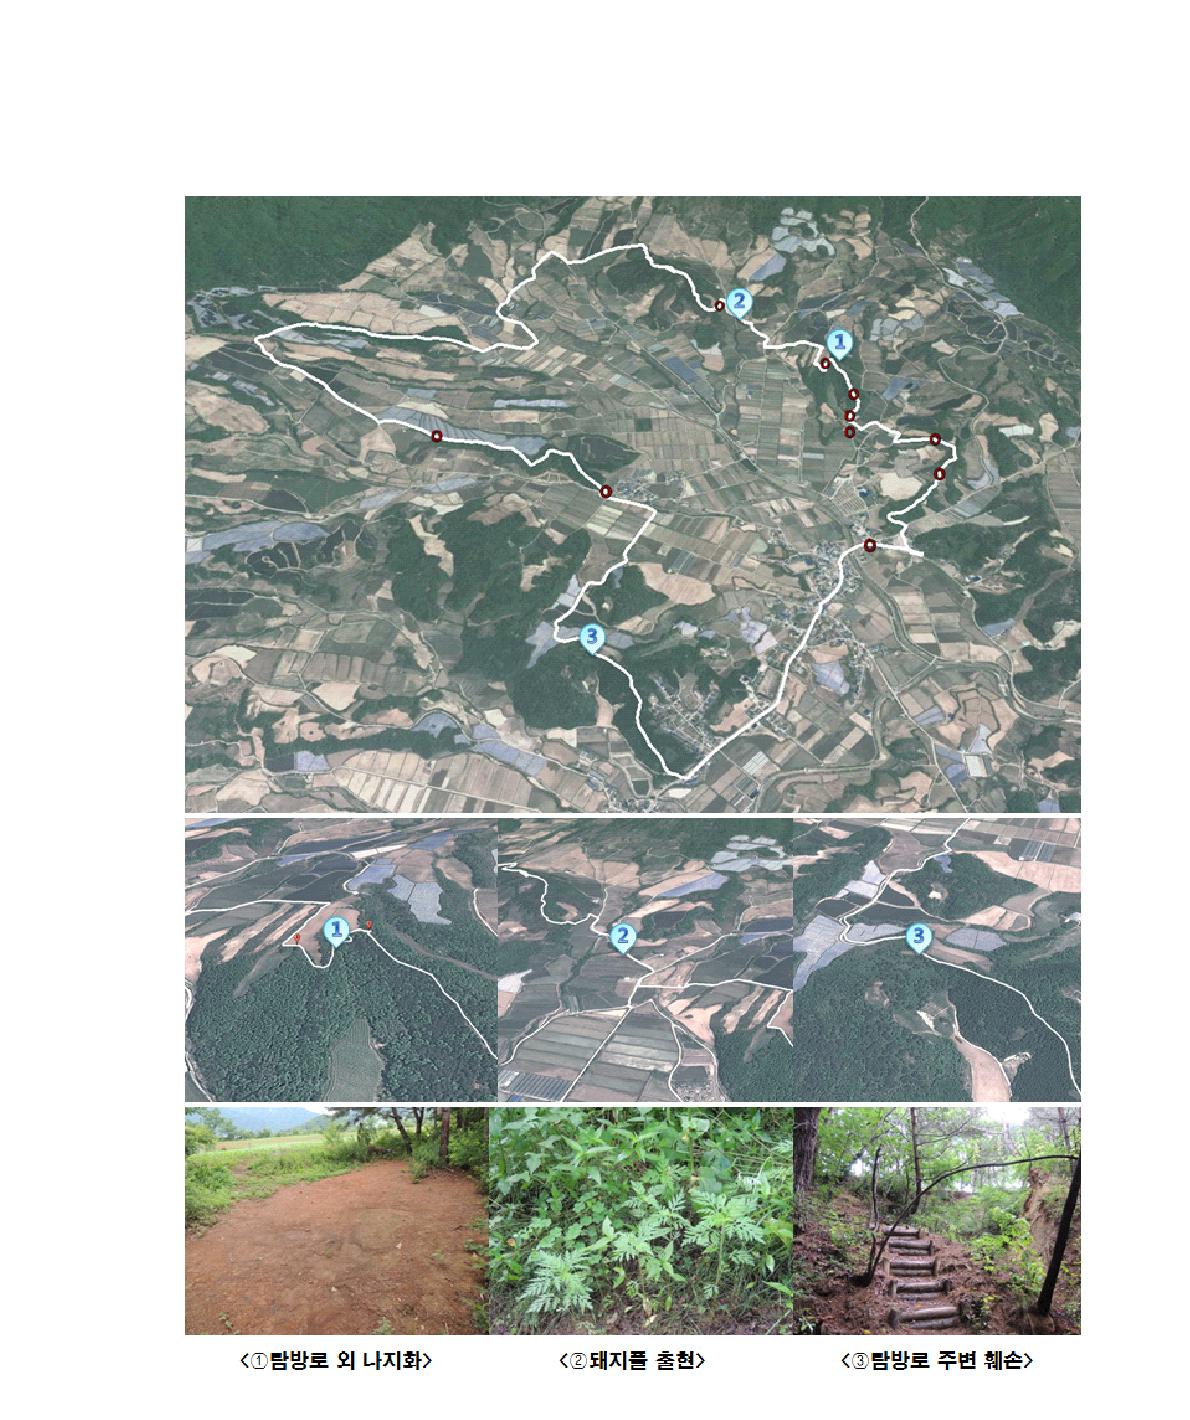 양구 DMZ 펀치볼 둘레길 “평화의 숲길” 주요 생태적 취약 지점